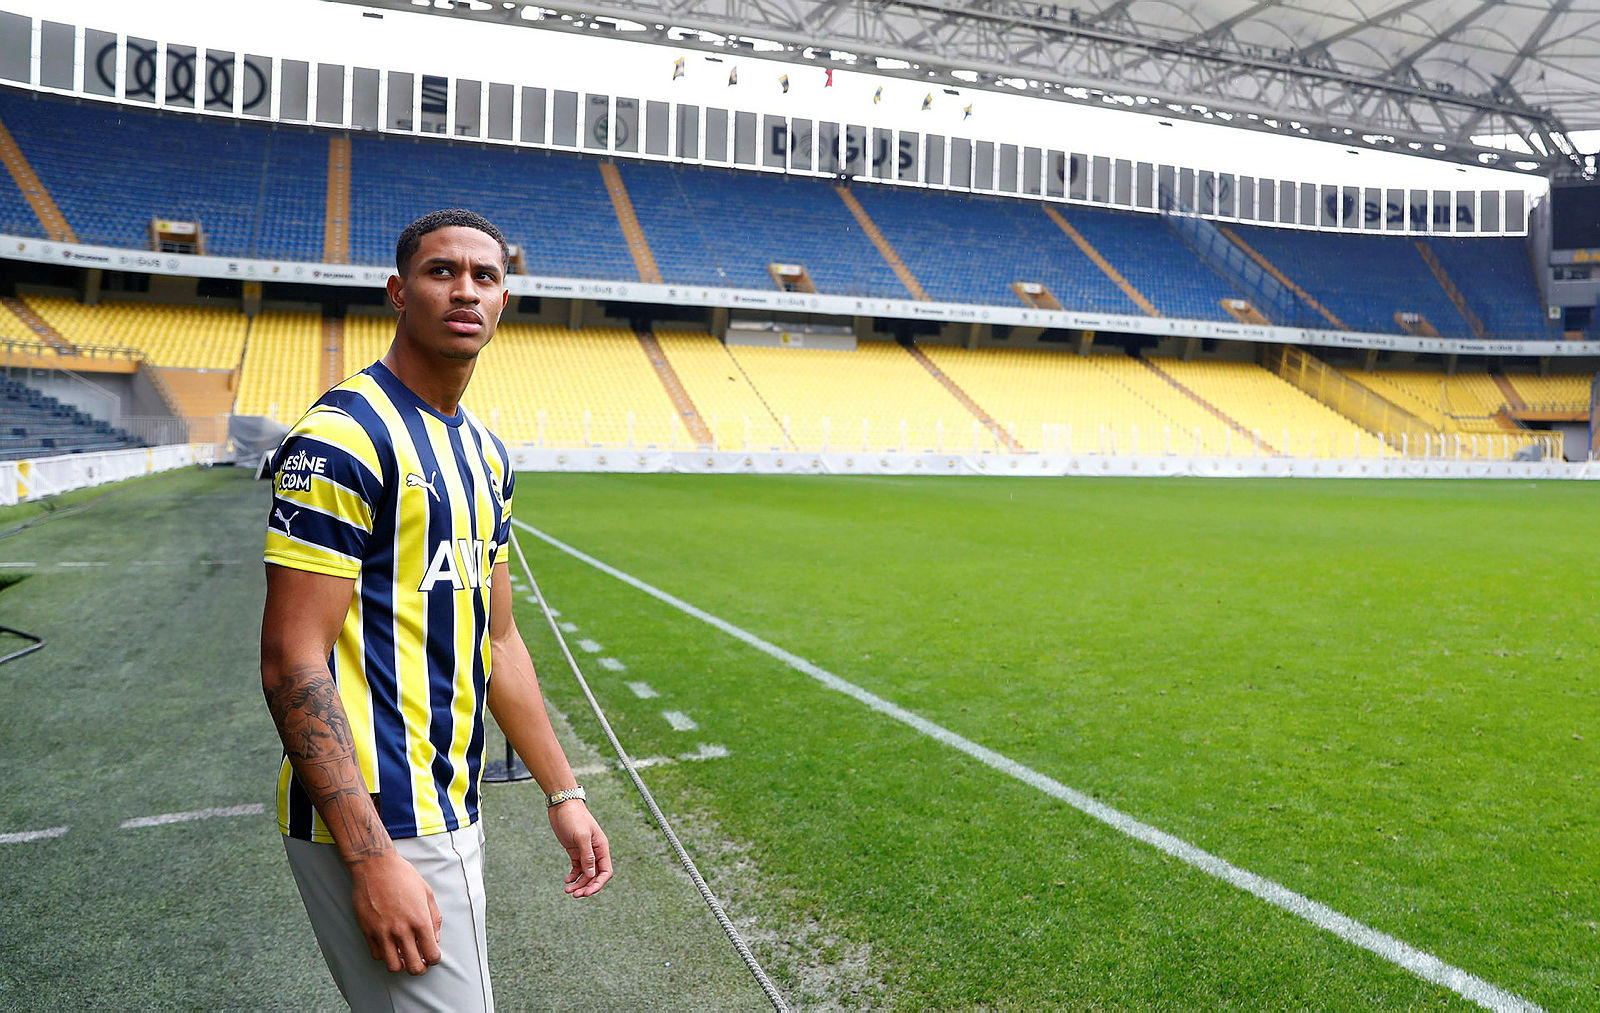 aSpor: Fenerbahçe UEFA'ya verdiği kadroda değişiklik yaptı! Samet Akaydin ve Jayden Oosterwolde